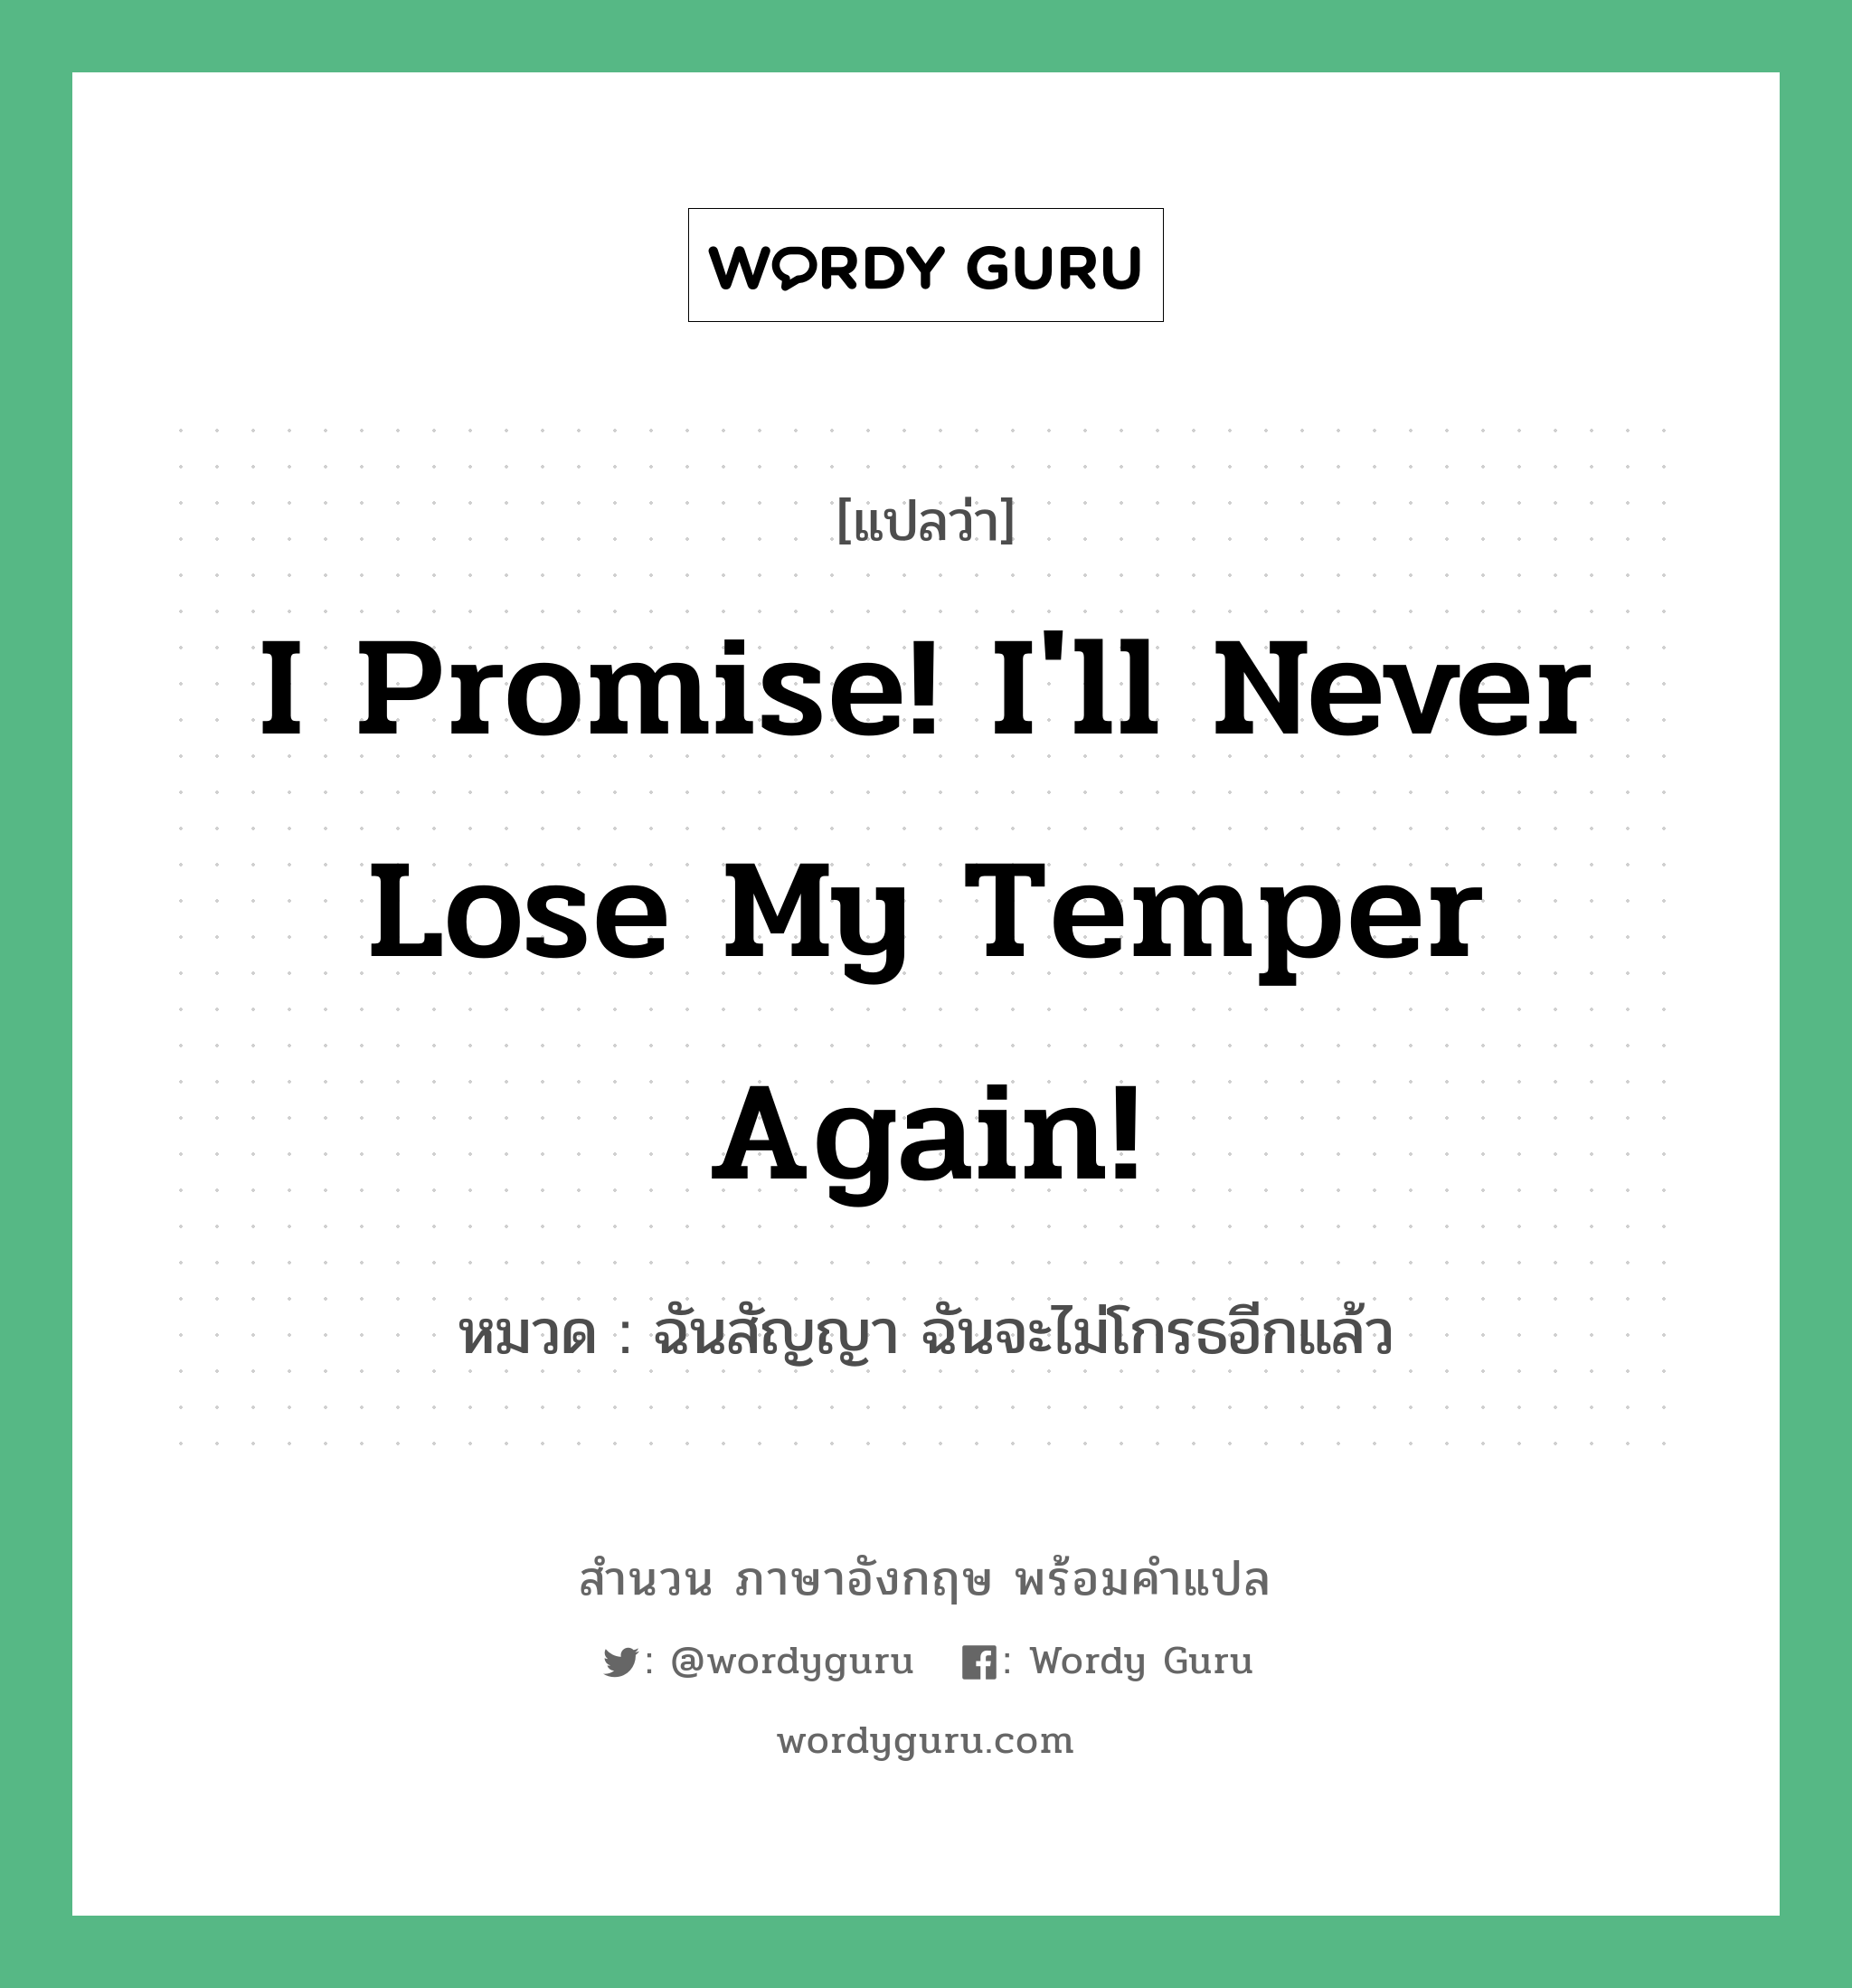 I promise! I'll never lose my temper again! แปลว่า?, สำนวนภาษาอังกฤษ I promise! I'll never lose my temper again! หมวด ฉันสัญญา ฉันจะไม่โกรธอีกแล้ว